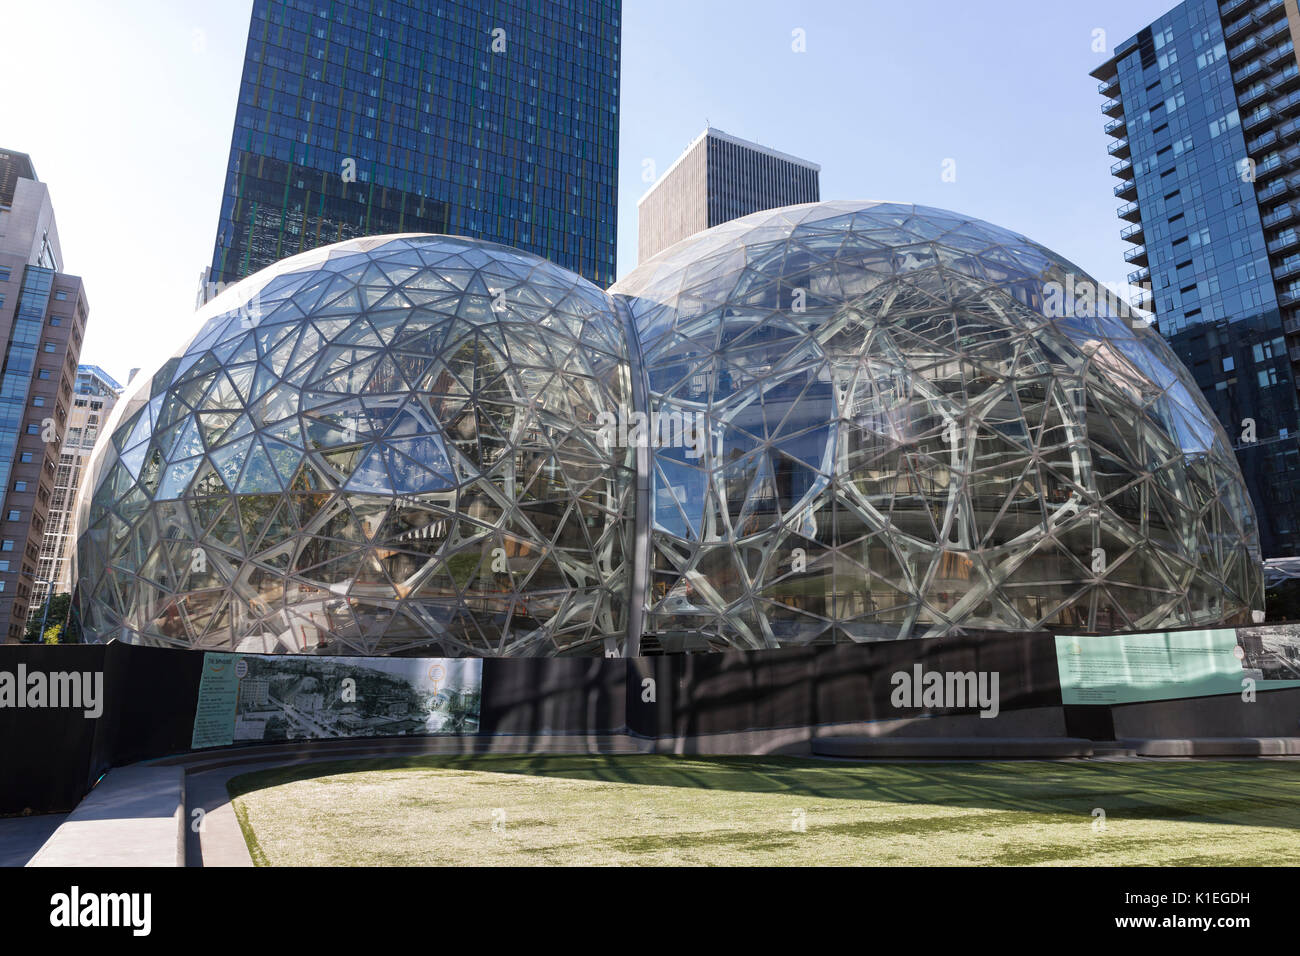 Seattle, Washington: Amazon sfere in costruzione presso l'Amazzonia Campus  urbano nel quartiere di Belltown. Le strutture geodetiche che ospiterà  ulteriori spazi per uffici, negozi al dettaglio e un giardino botanico,  sono pianificati